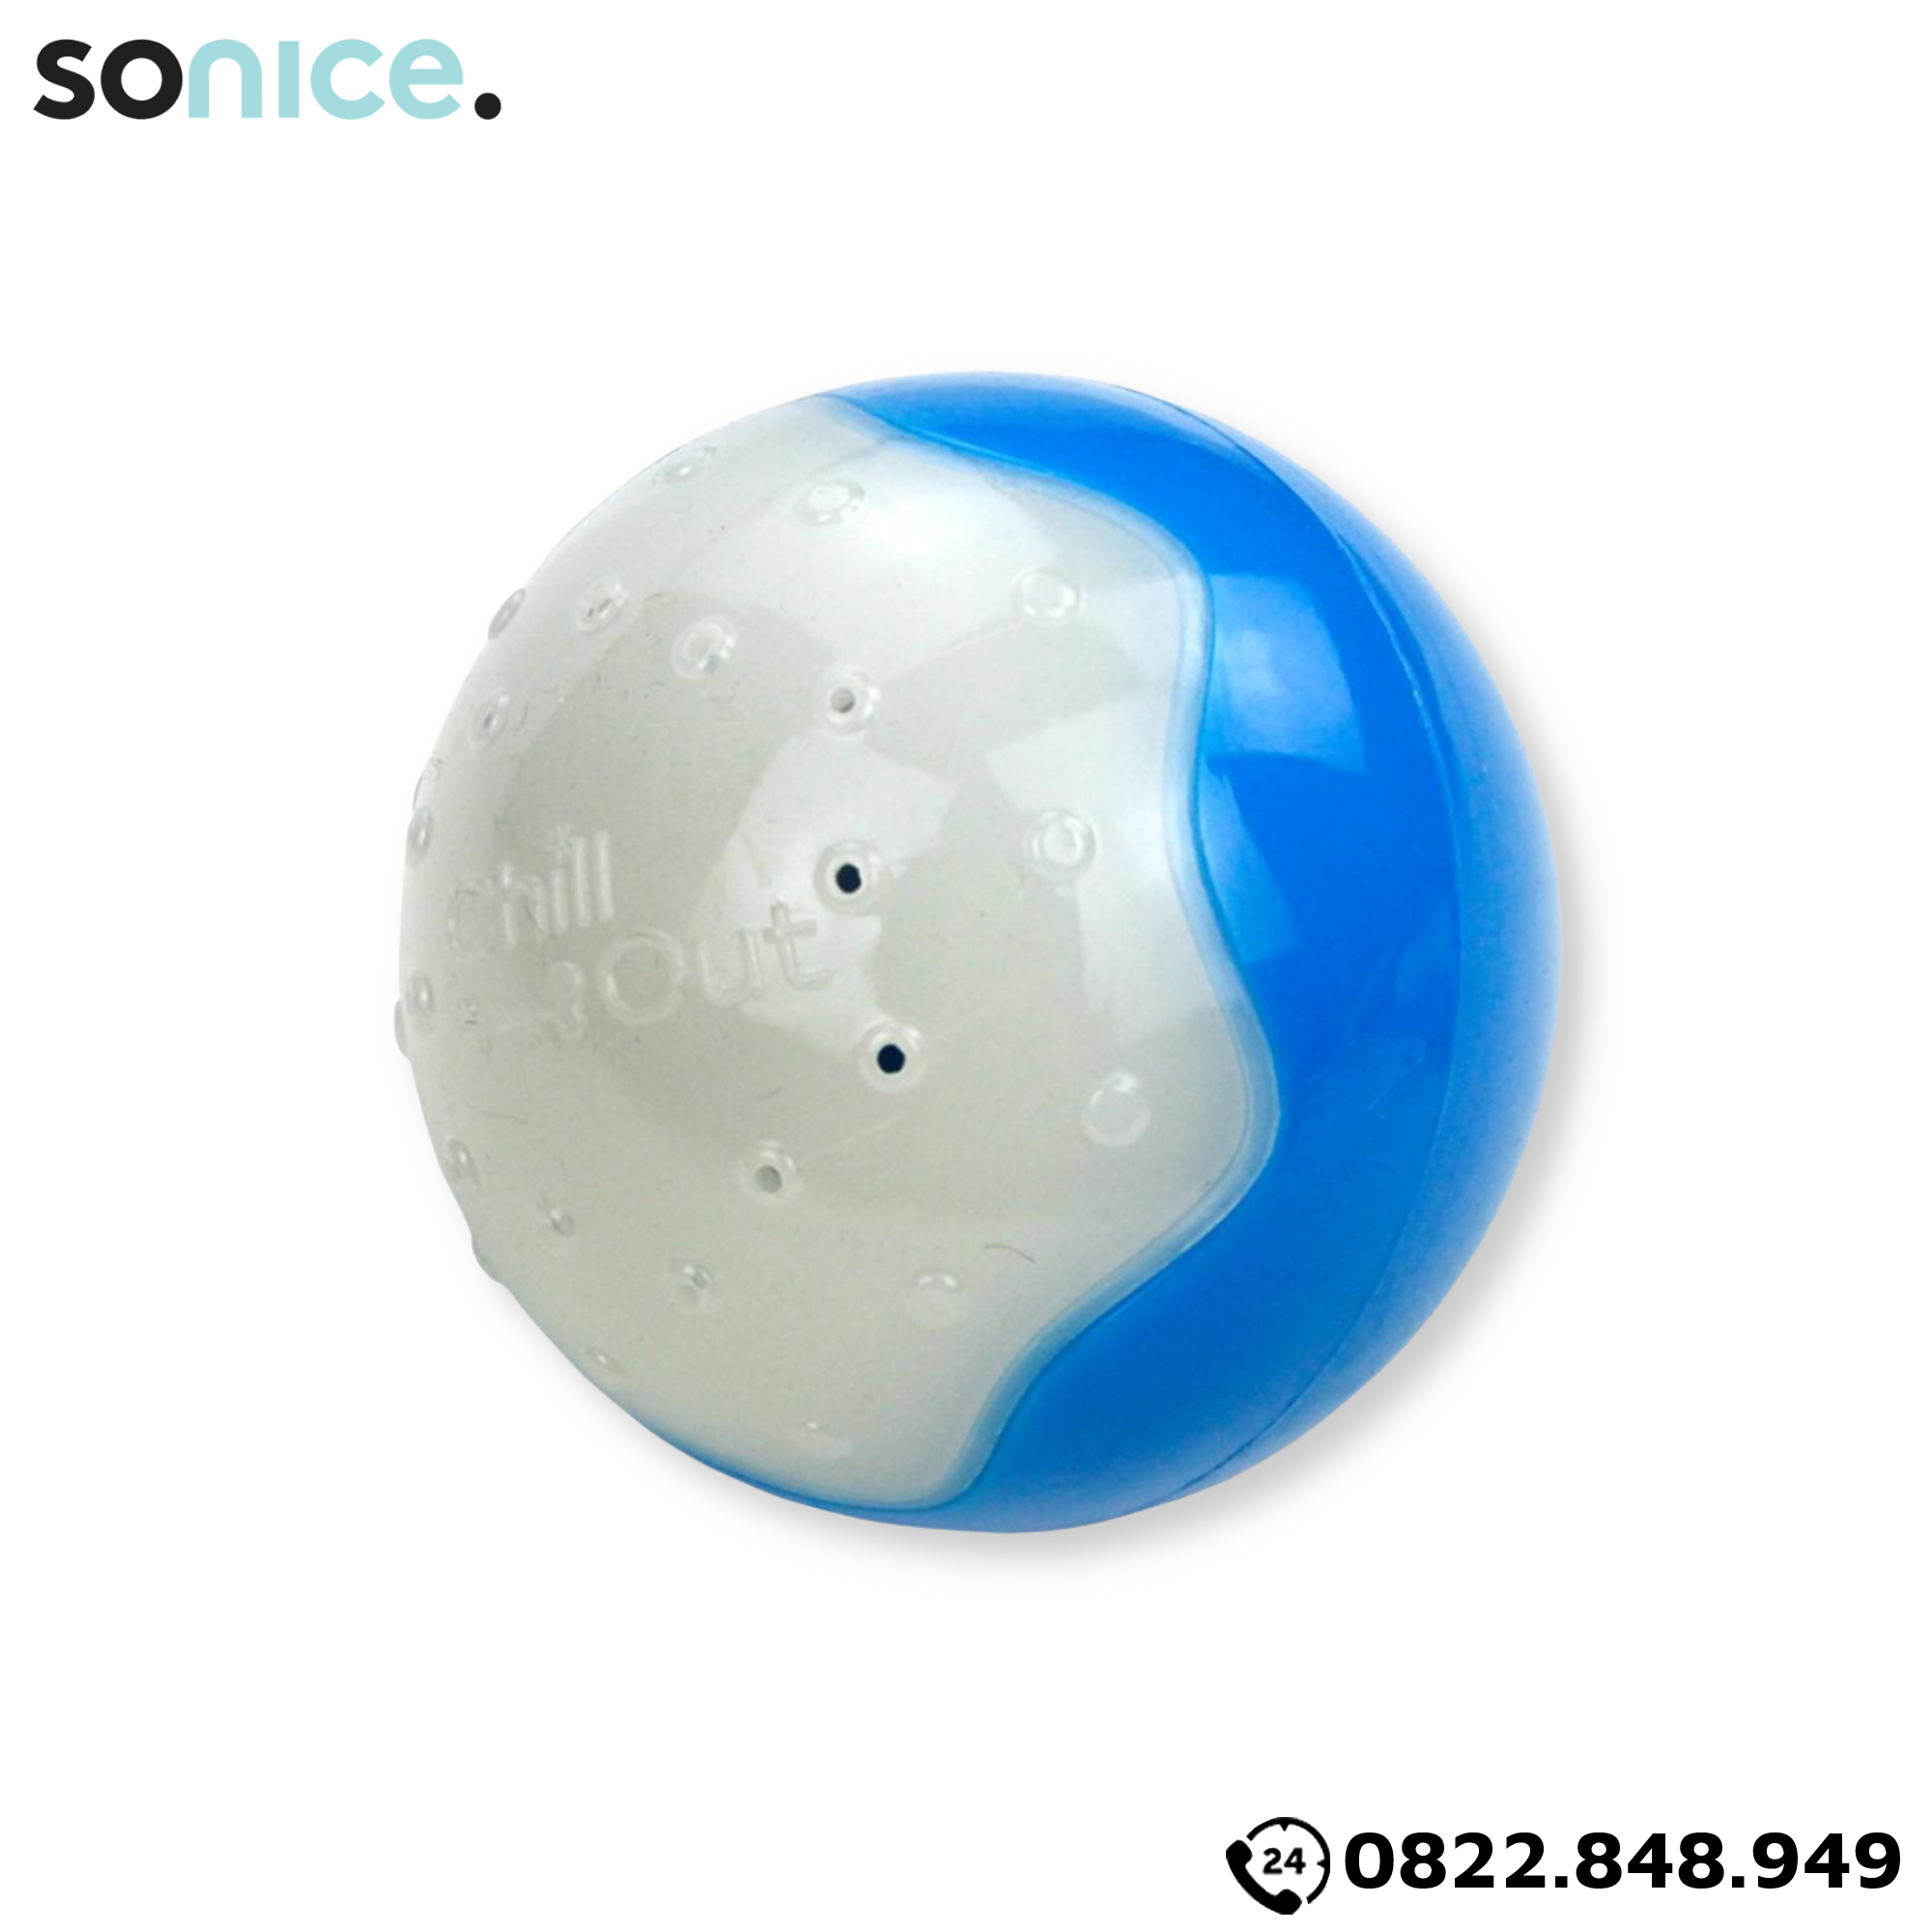  Đồ chơi trái banh lạnh AFP Ice Ball Chill Out Toys size S - Có thể bỏ tủ lạnh, hỗ trợ giải nhiệt mùa hè SONICE. 